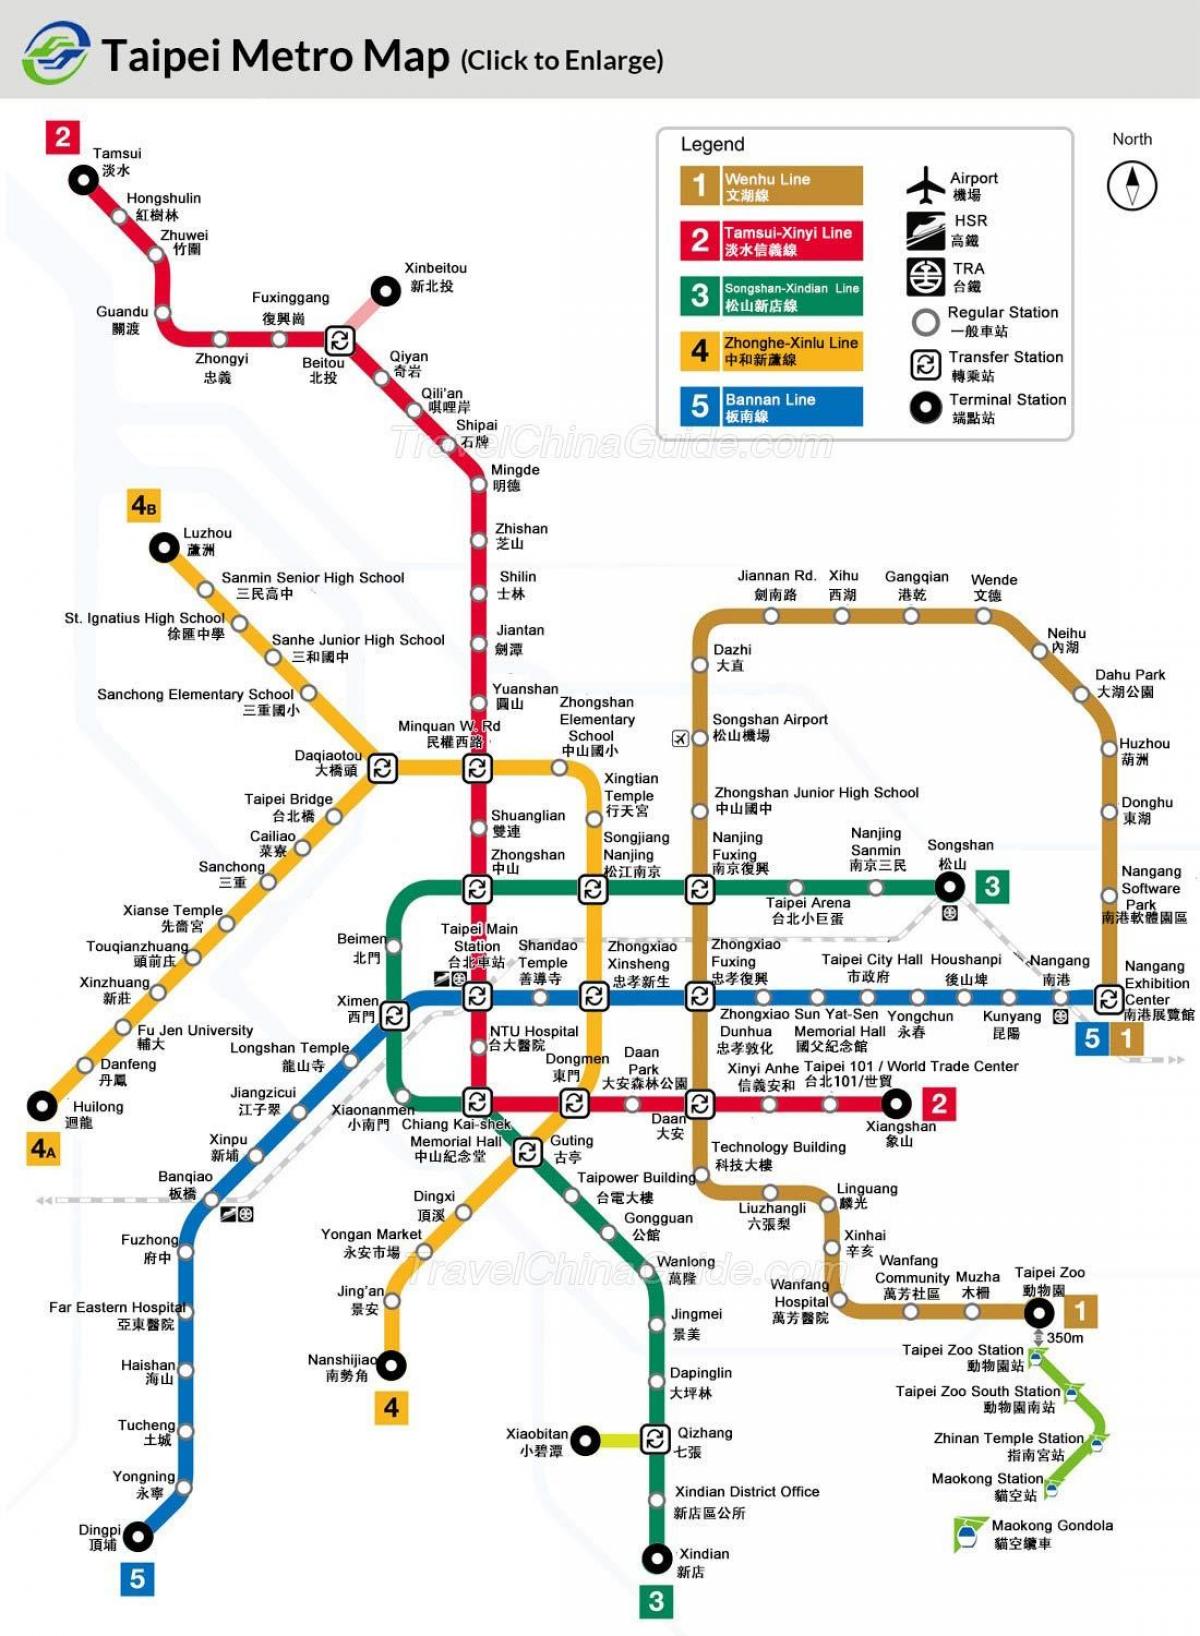 지도의 지하철 대만